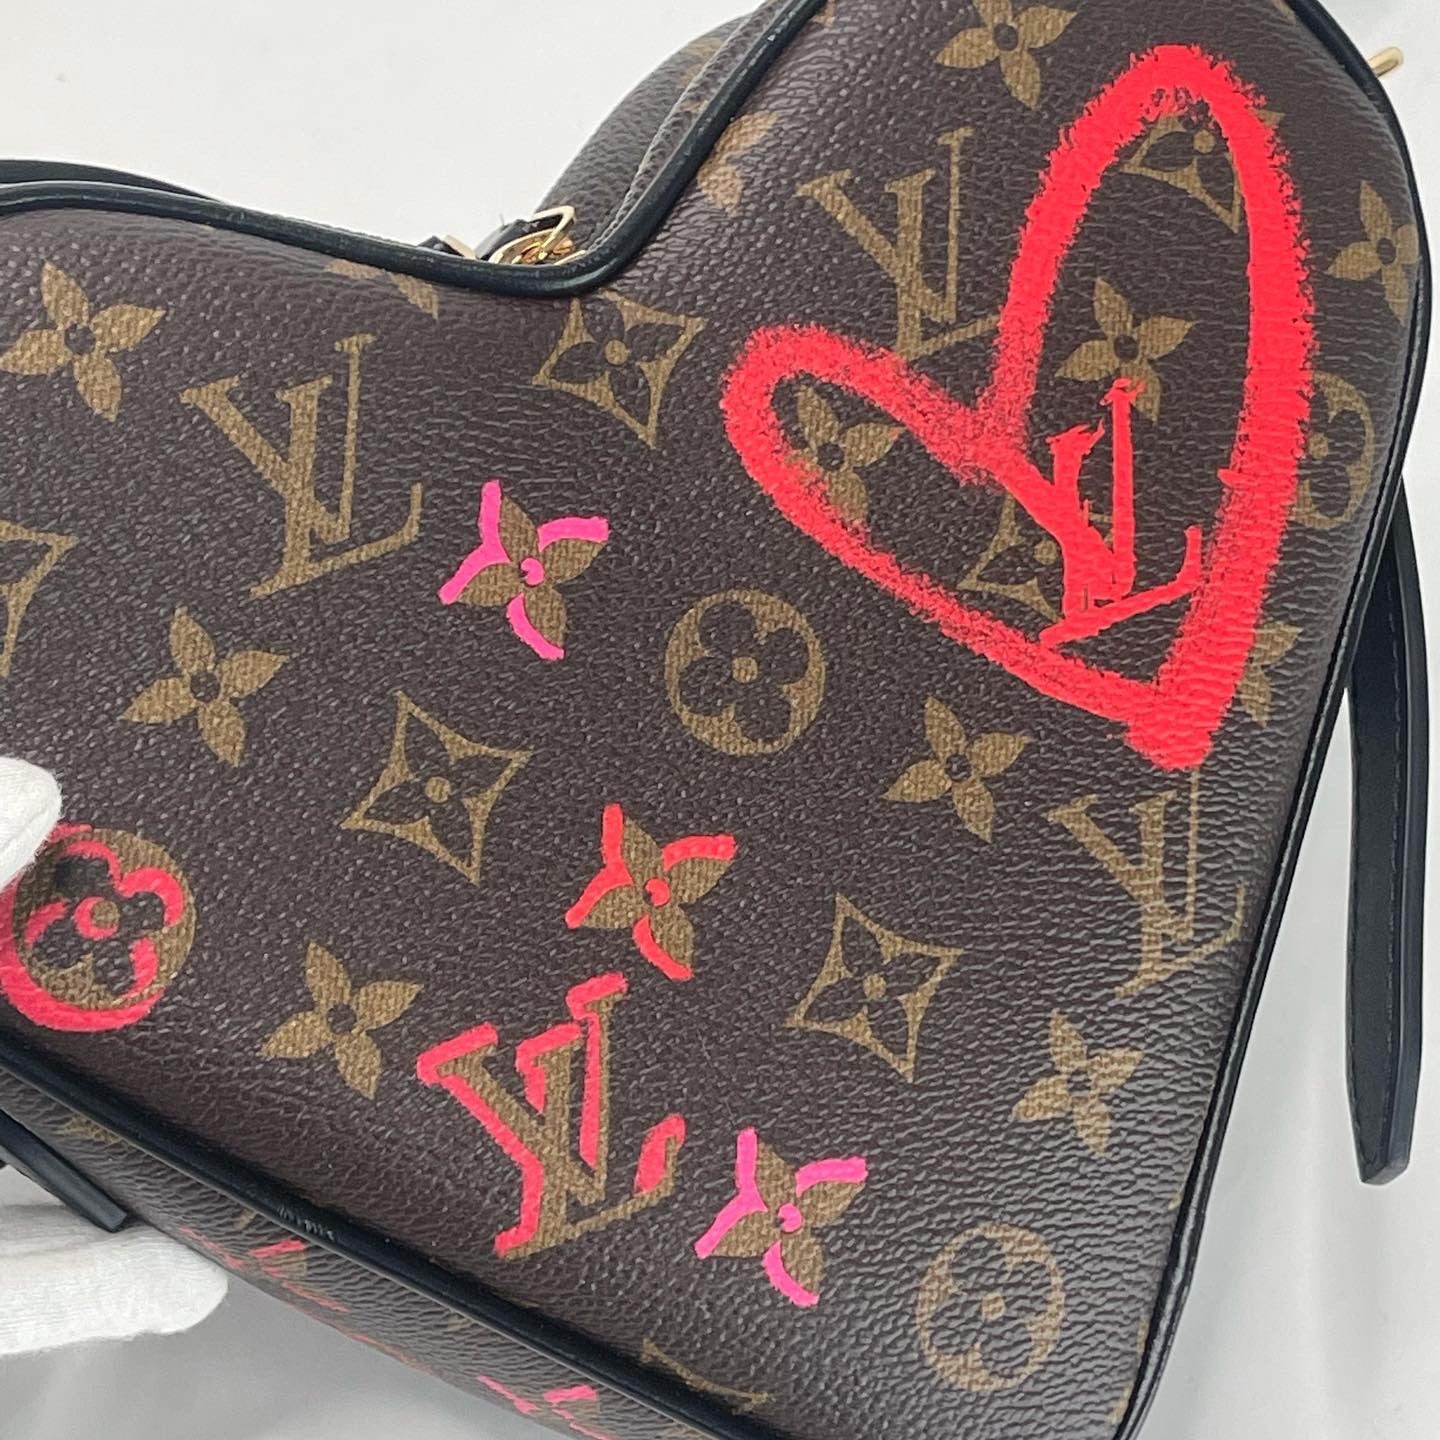 LOUIS VUITTON-LV Limited Edition SAC COEUR Heart Shape Handbag